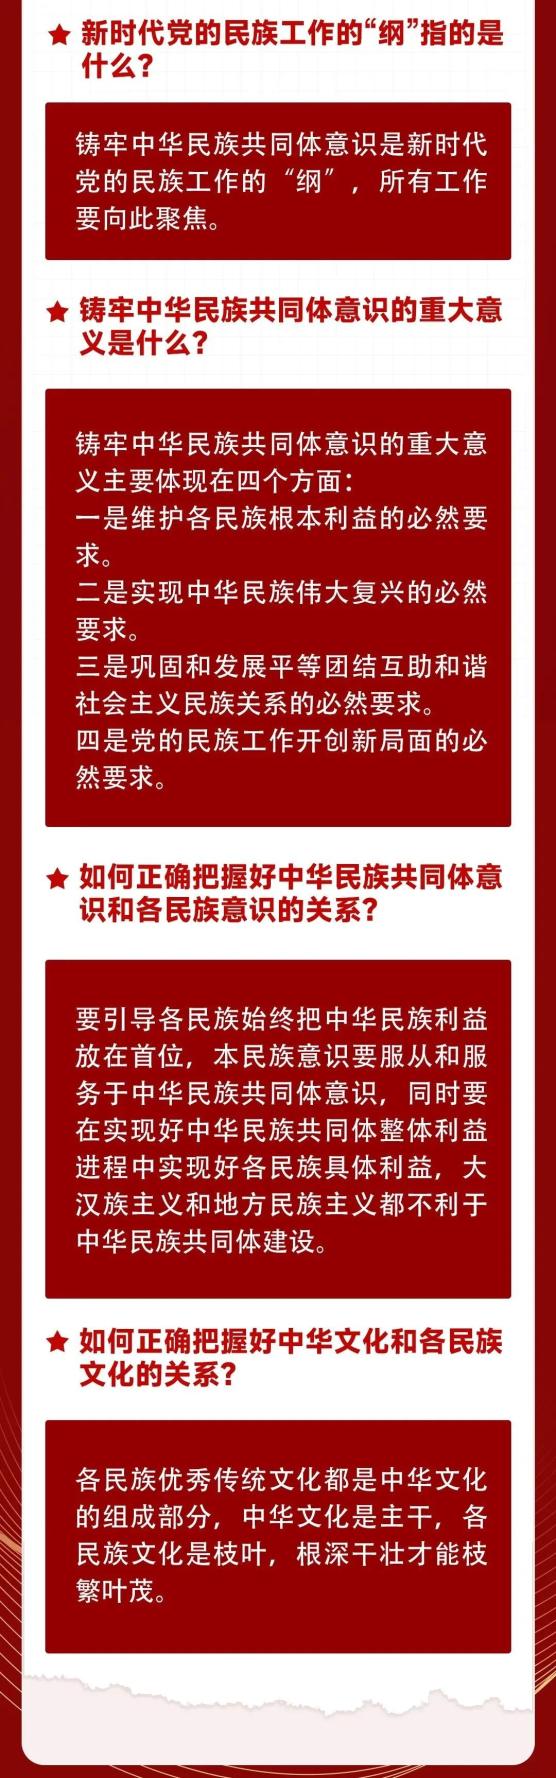 民族政策宣传月深入宣传贯彻党的民族理论政策铸牢中华民族共同体意识